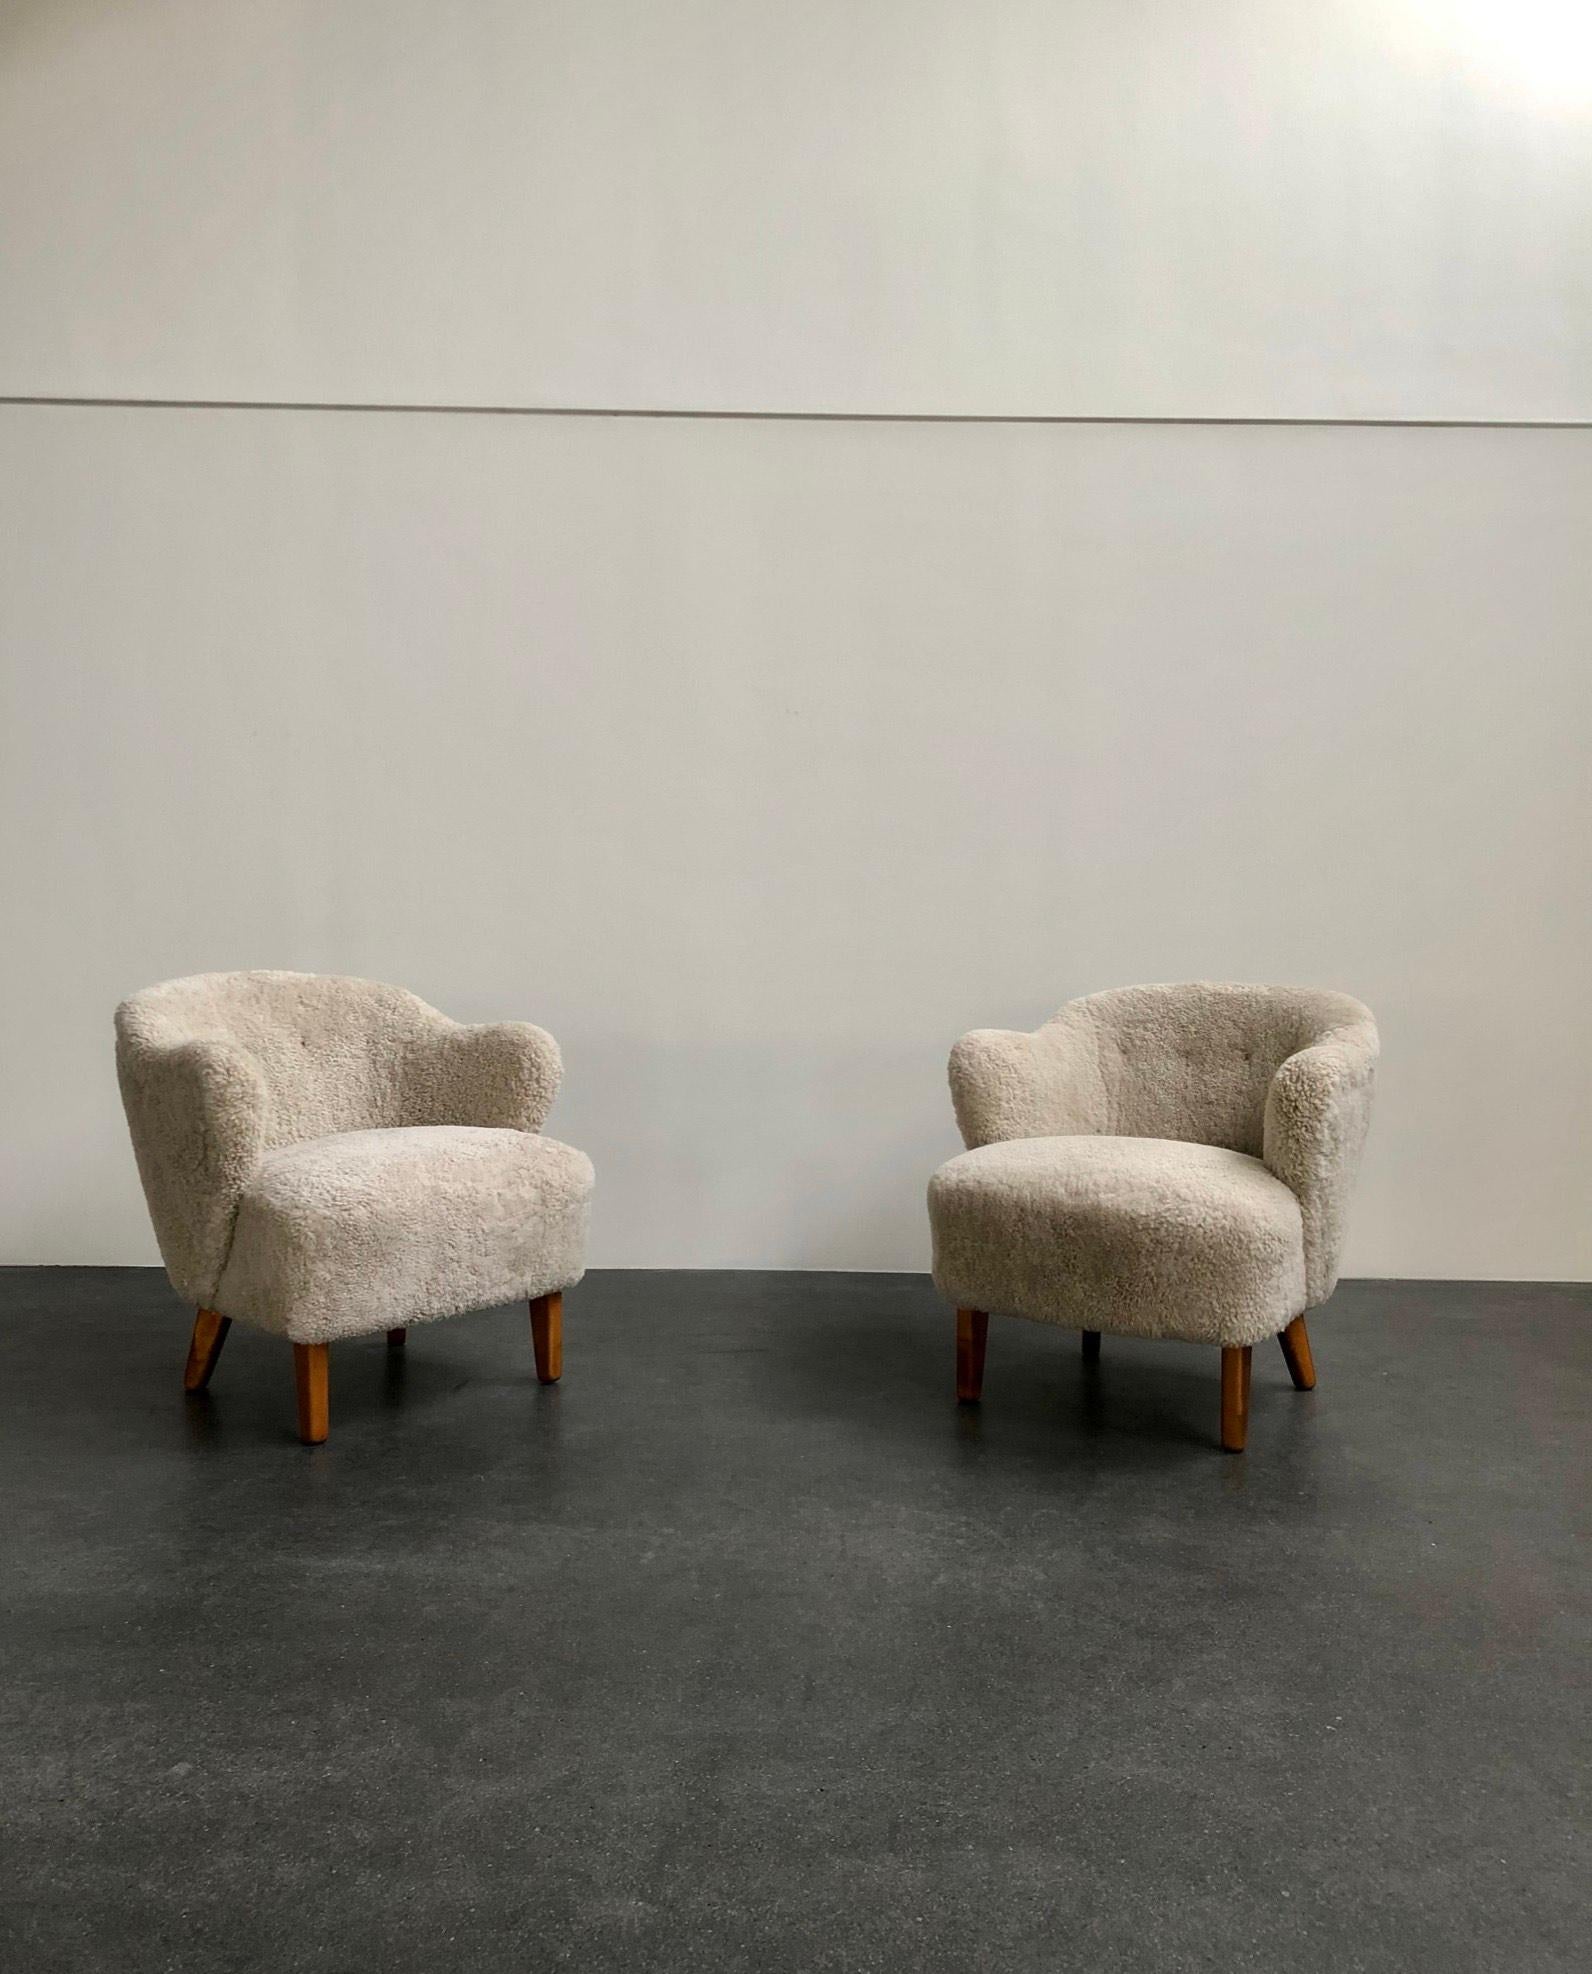 Flemming Lassen, zwei Sessel für den Tischlermeister Jacob Kjaer, Dänemark. Spitz zulaufende Beine aus gebeizter Esche und neu gepolstert mit beigem Schafsleder.

Das Modell wurde auf der Ausstellung der Copenhagen Cabinetmakers' Guild im Jahr 1940